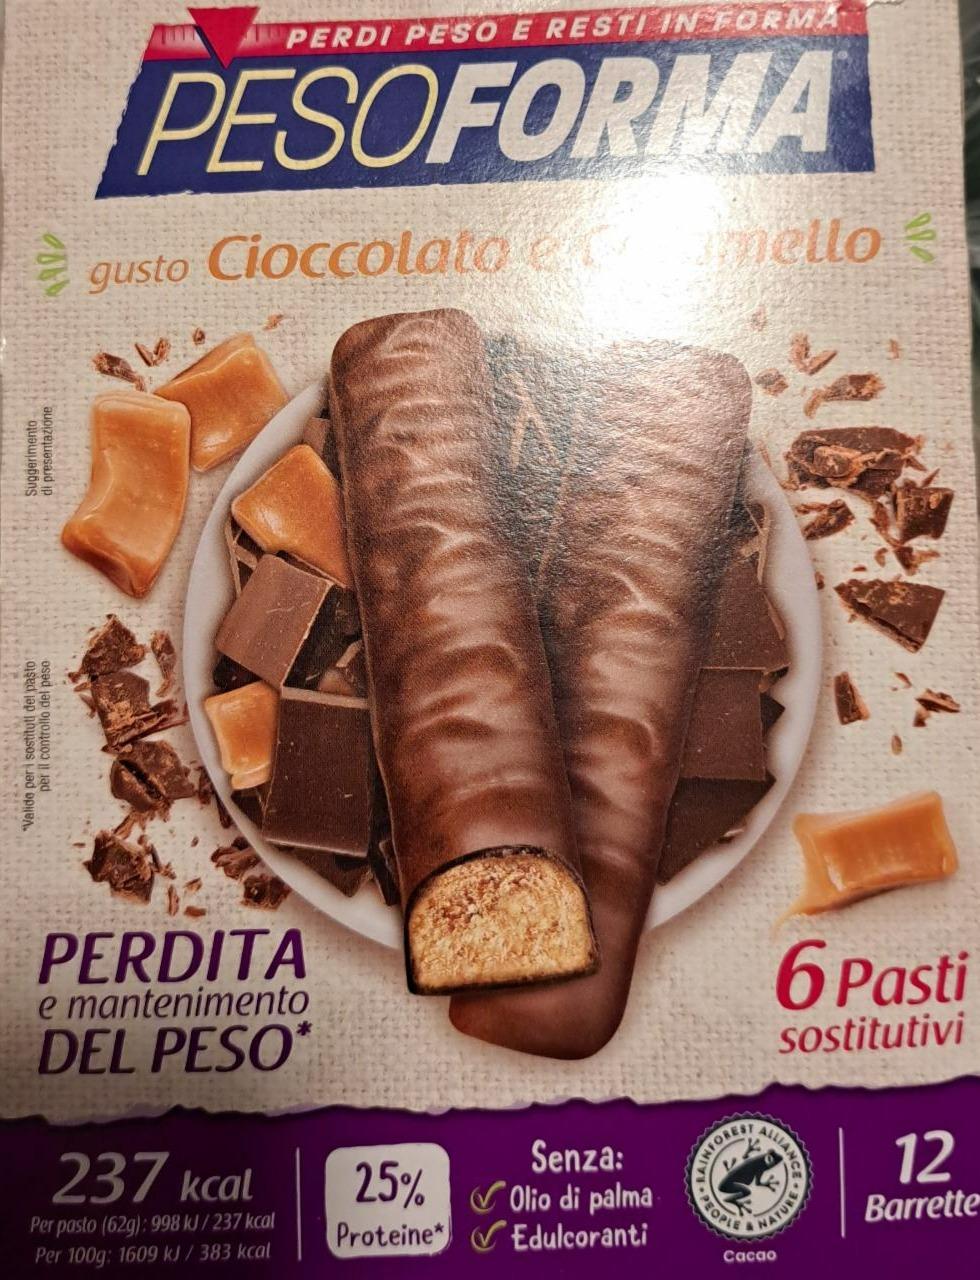 Fotografie - Gusto Cioccolato e Caramello Pesoforma